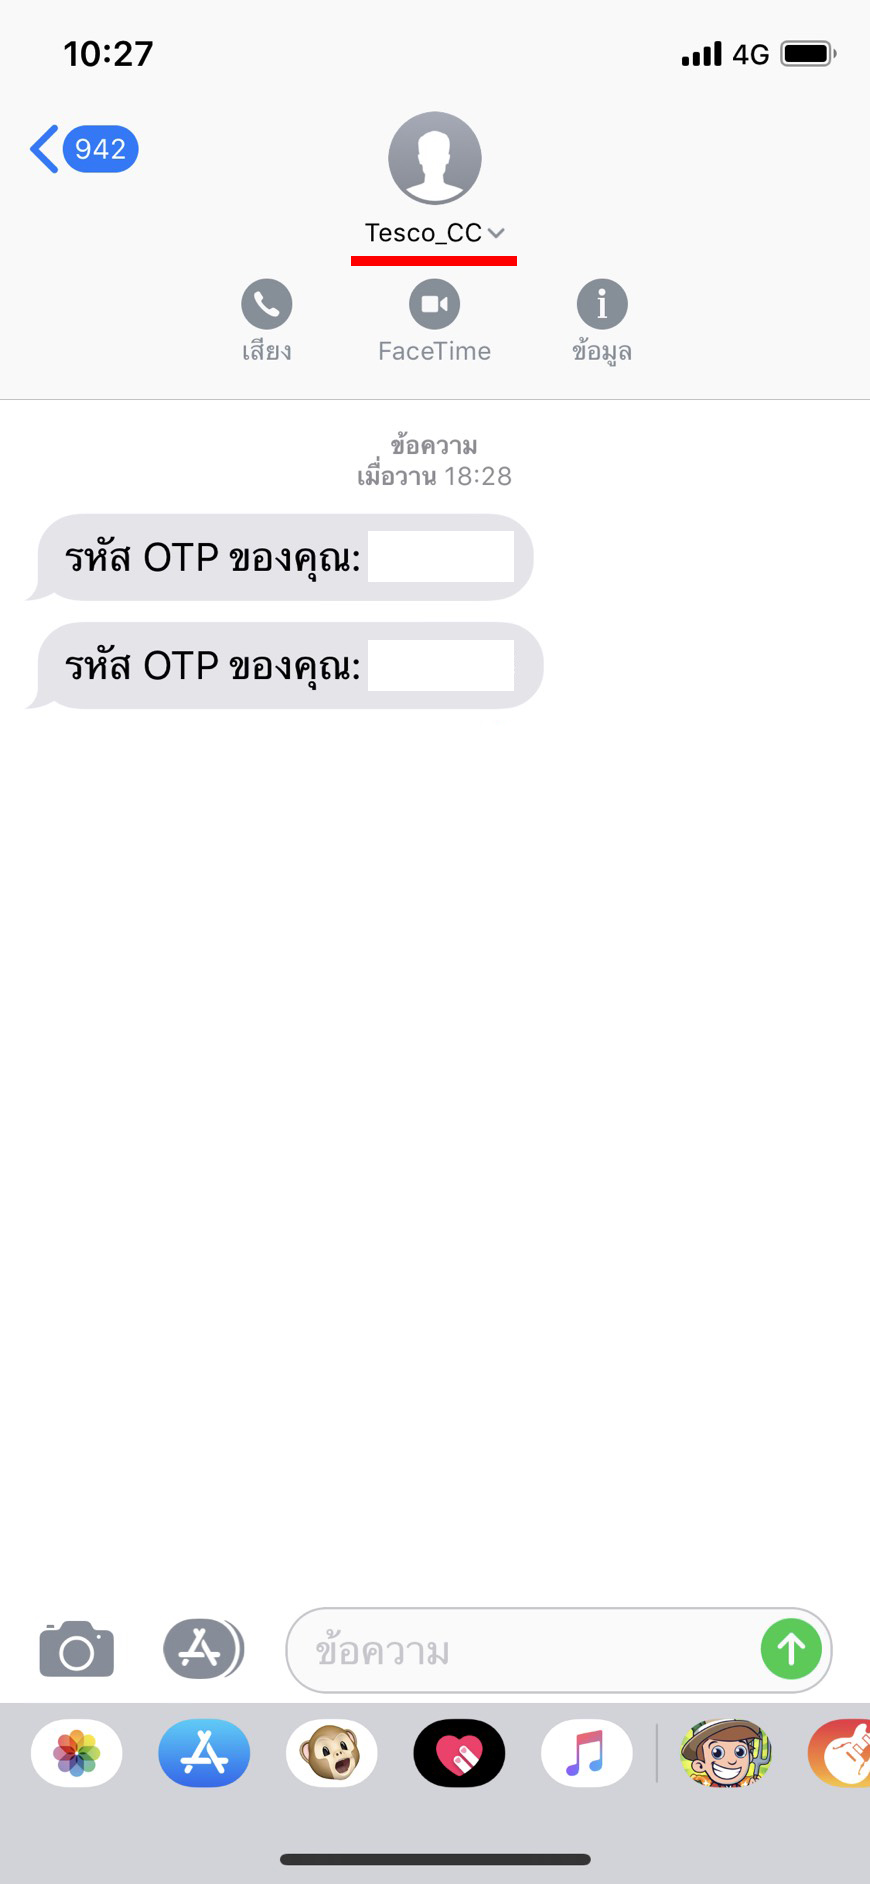 รหัส Otp จาก Tesco_Cc คือมาจากไหน - Pantip